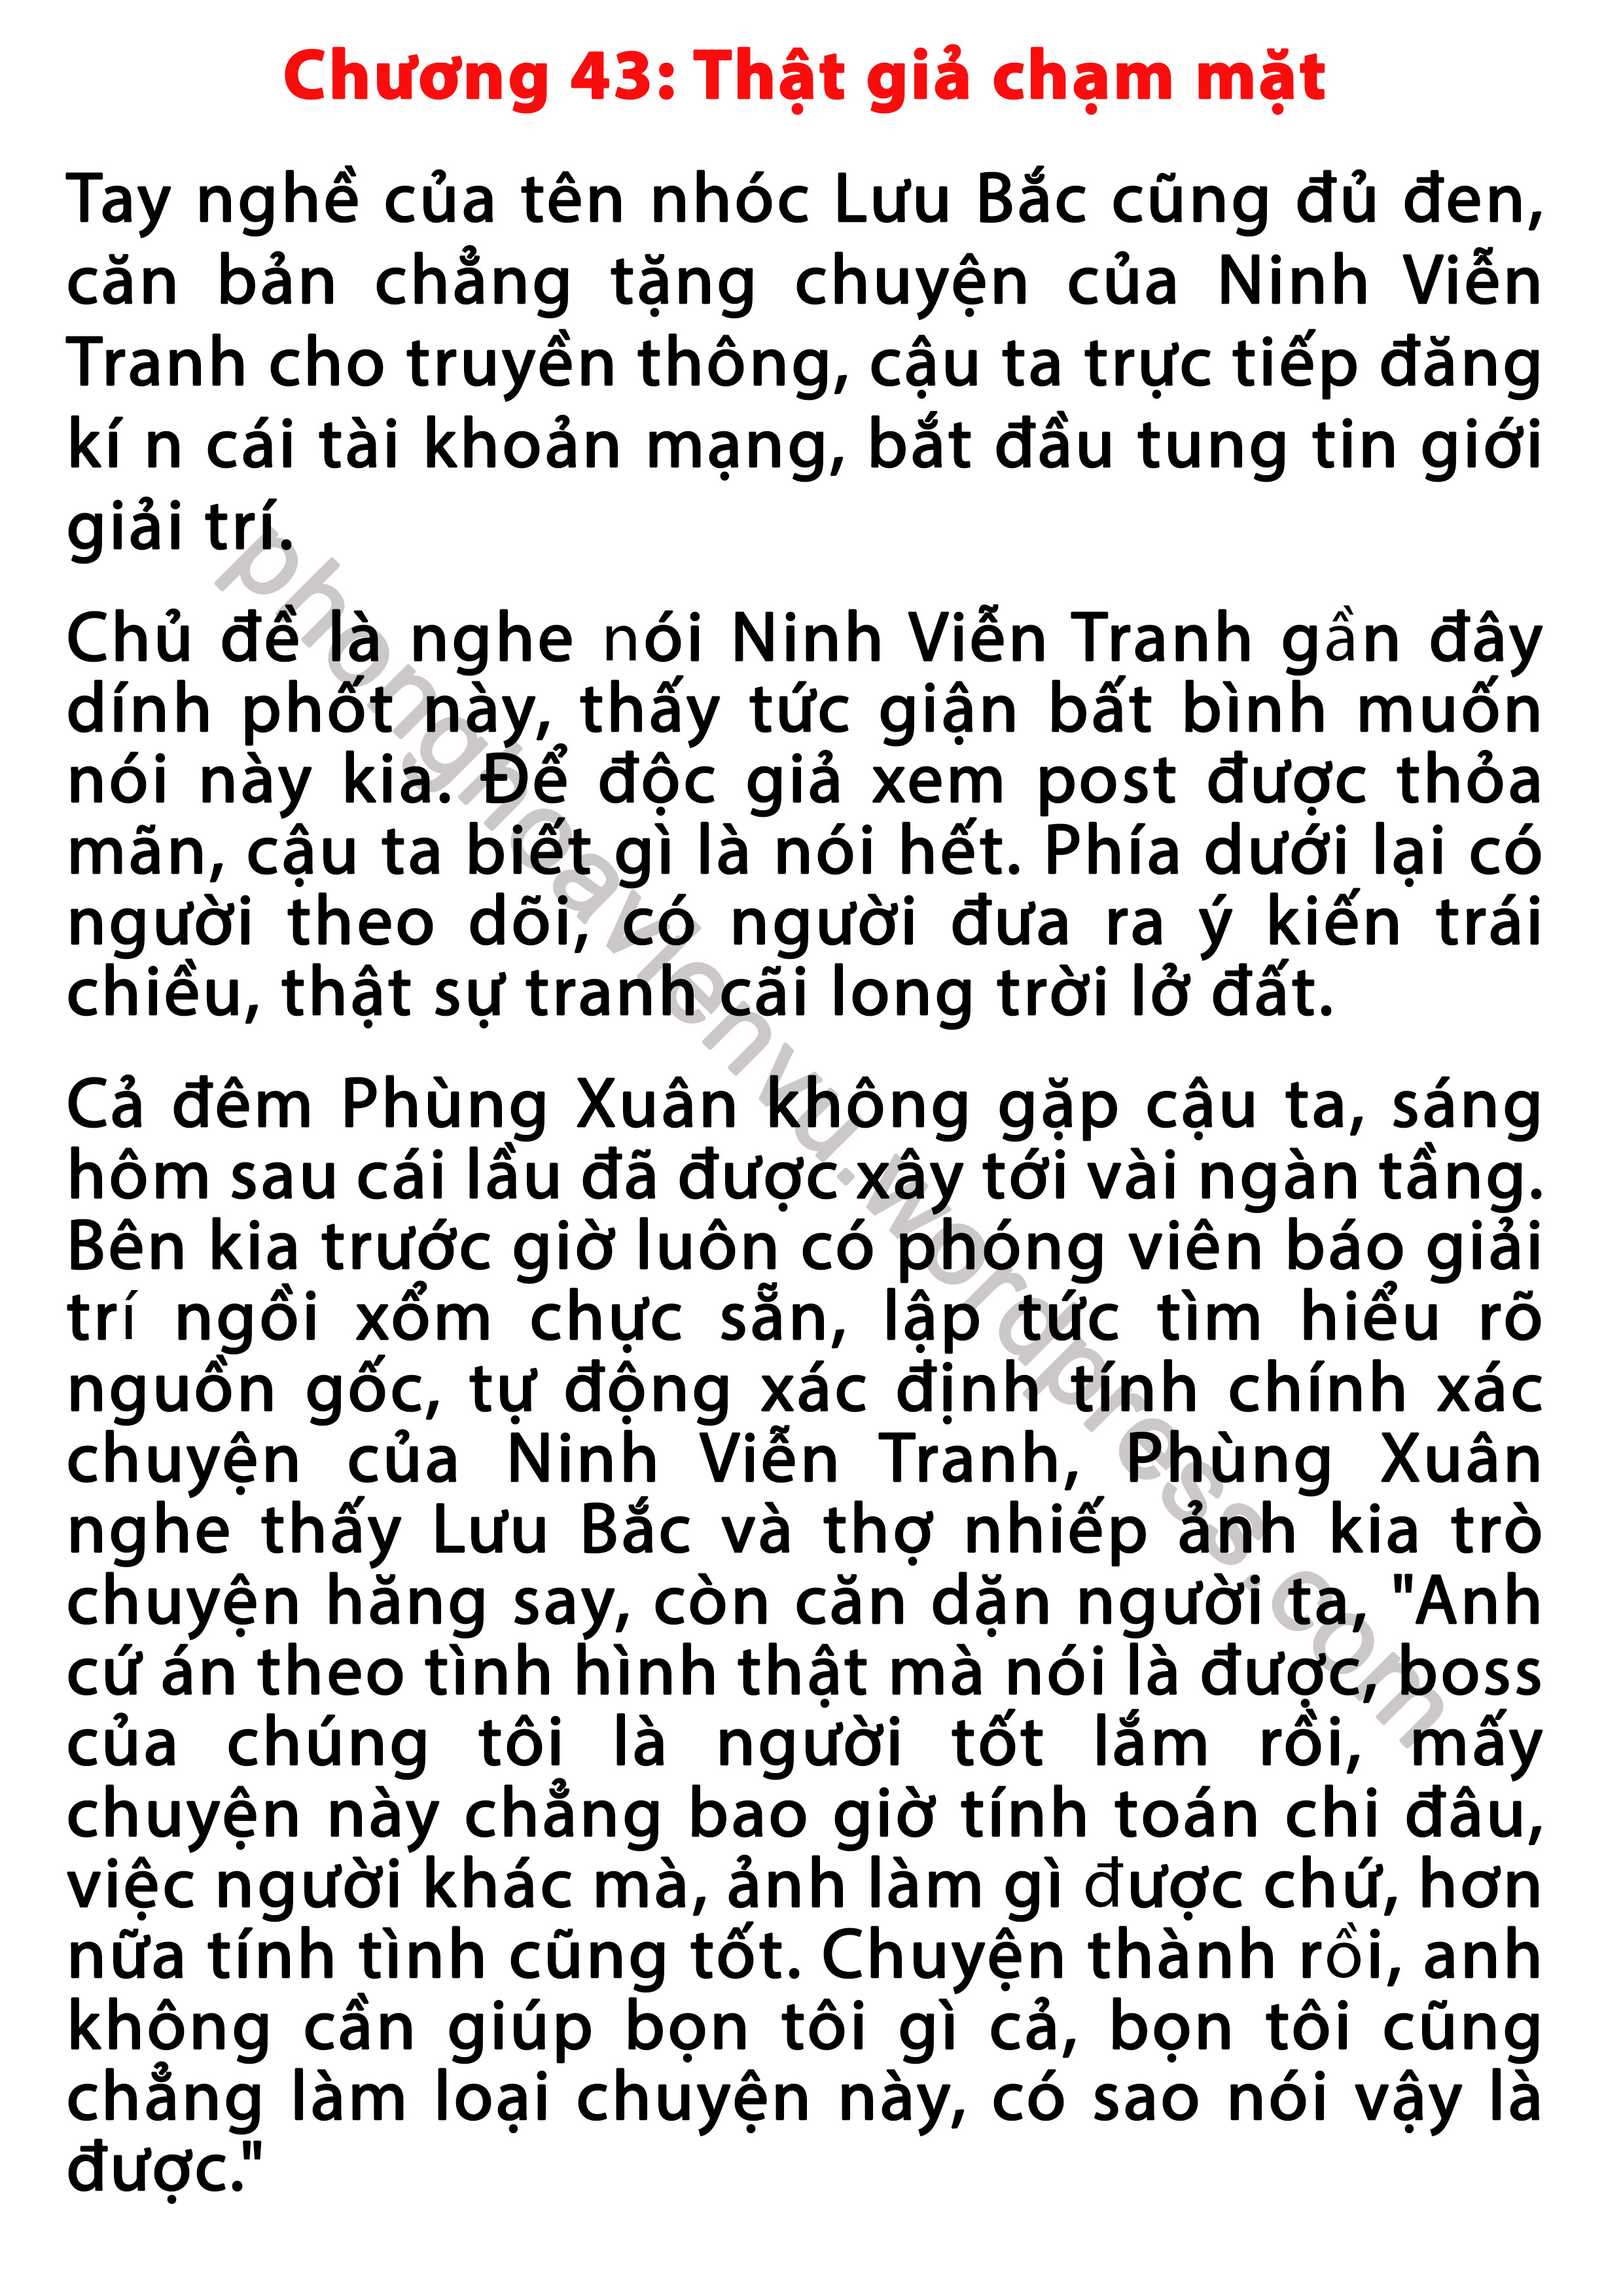 phung-xuan-43-pic1